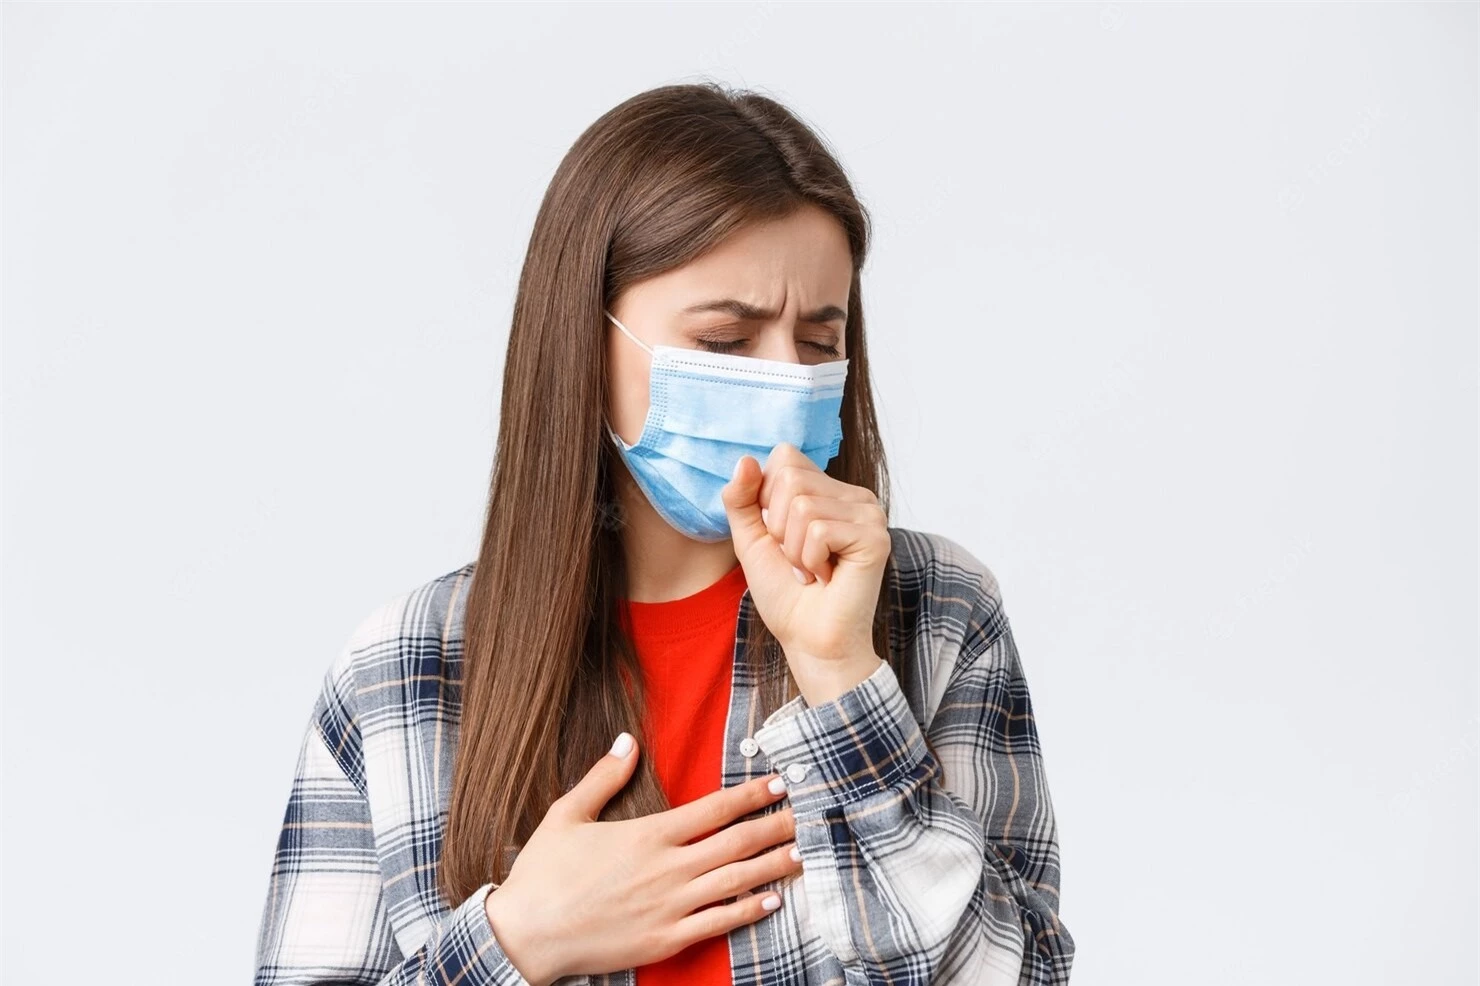 Do dễ bị nhiễm khuẩn, những người mắc bệnh phổi - phế quản mạn tính, người nhiễm virus... rất dễ bị suy hô hấp.